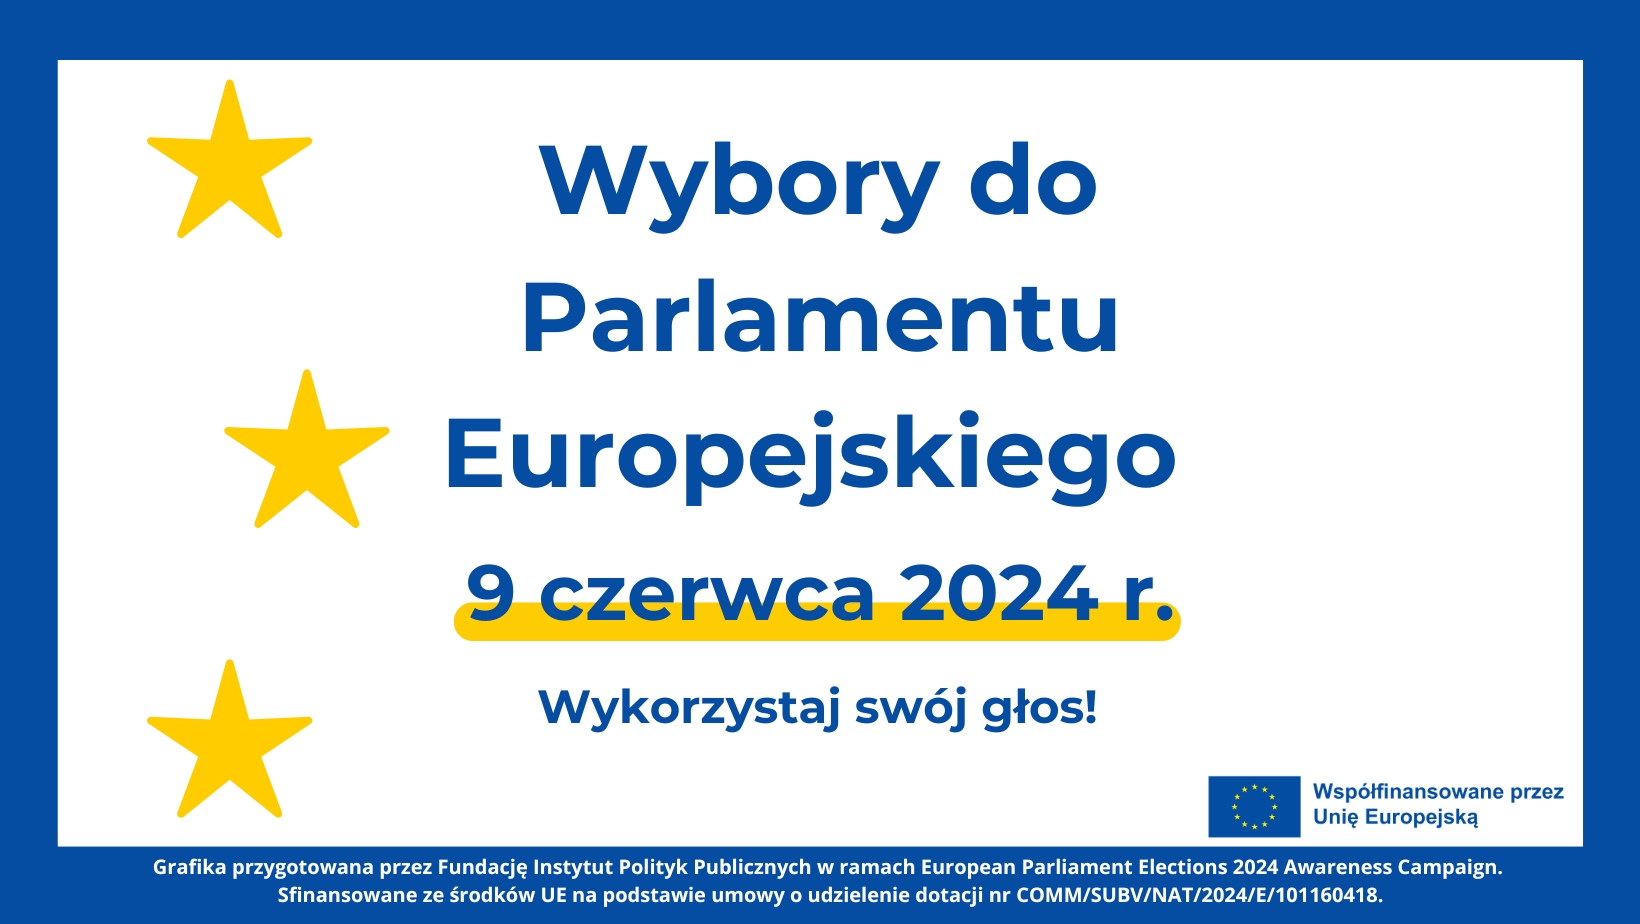 Wybory do Parlamentu Europejskiego - 9 czerwca 2024 r.